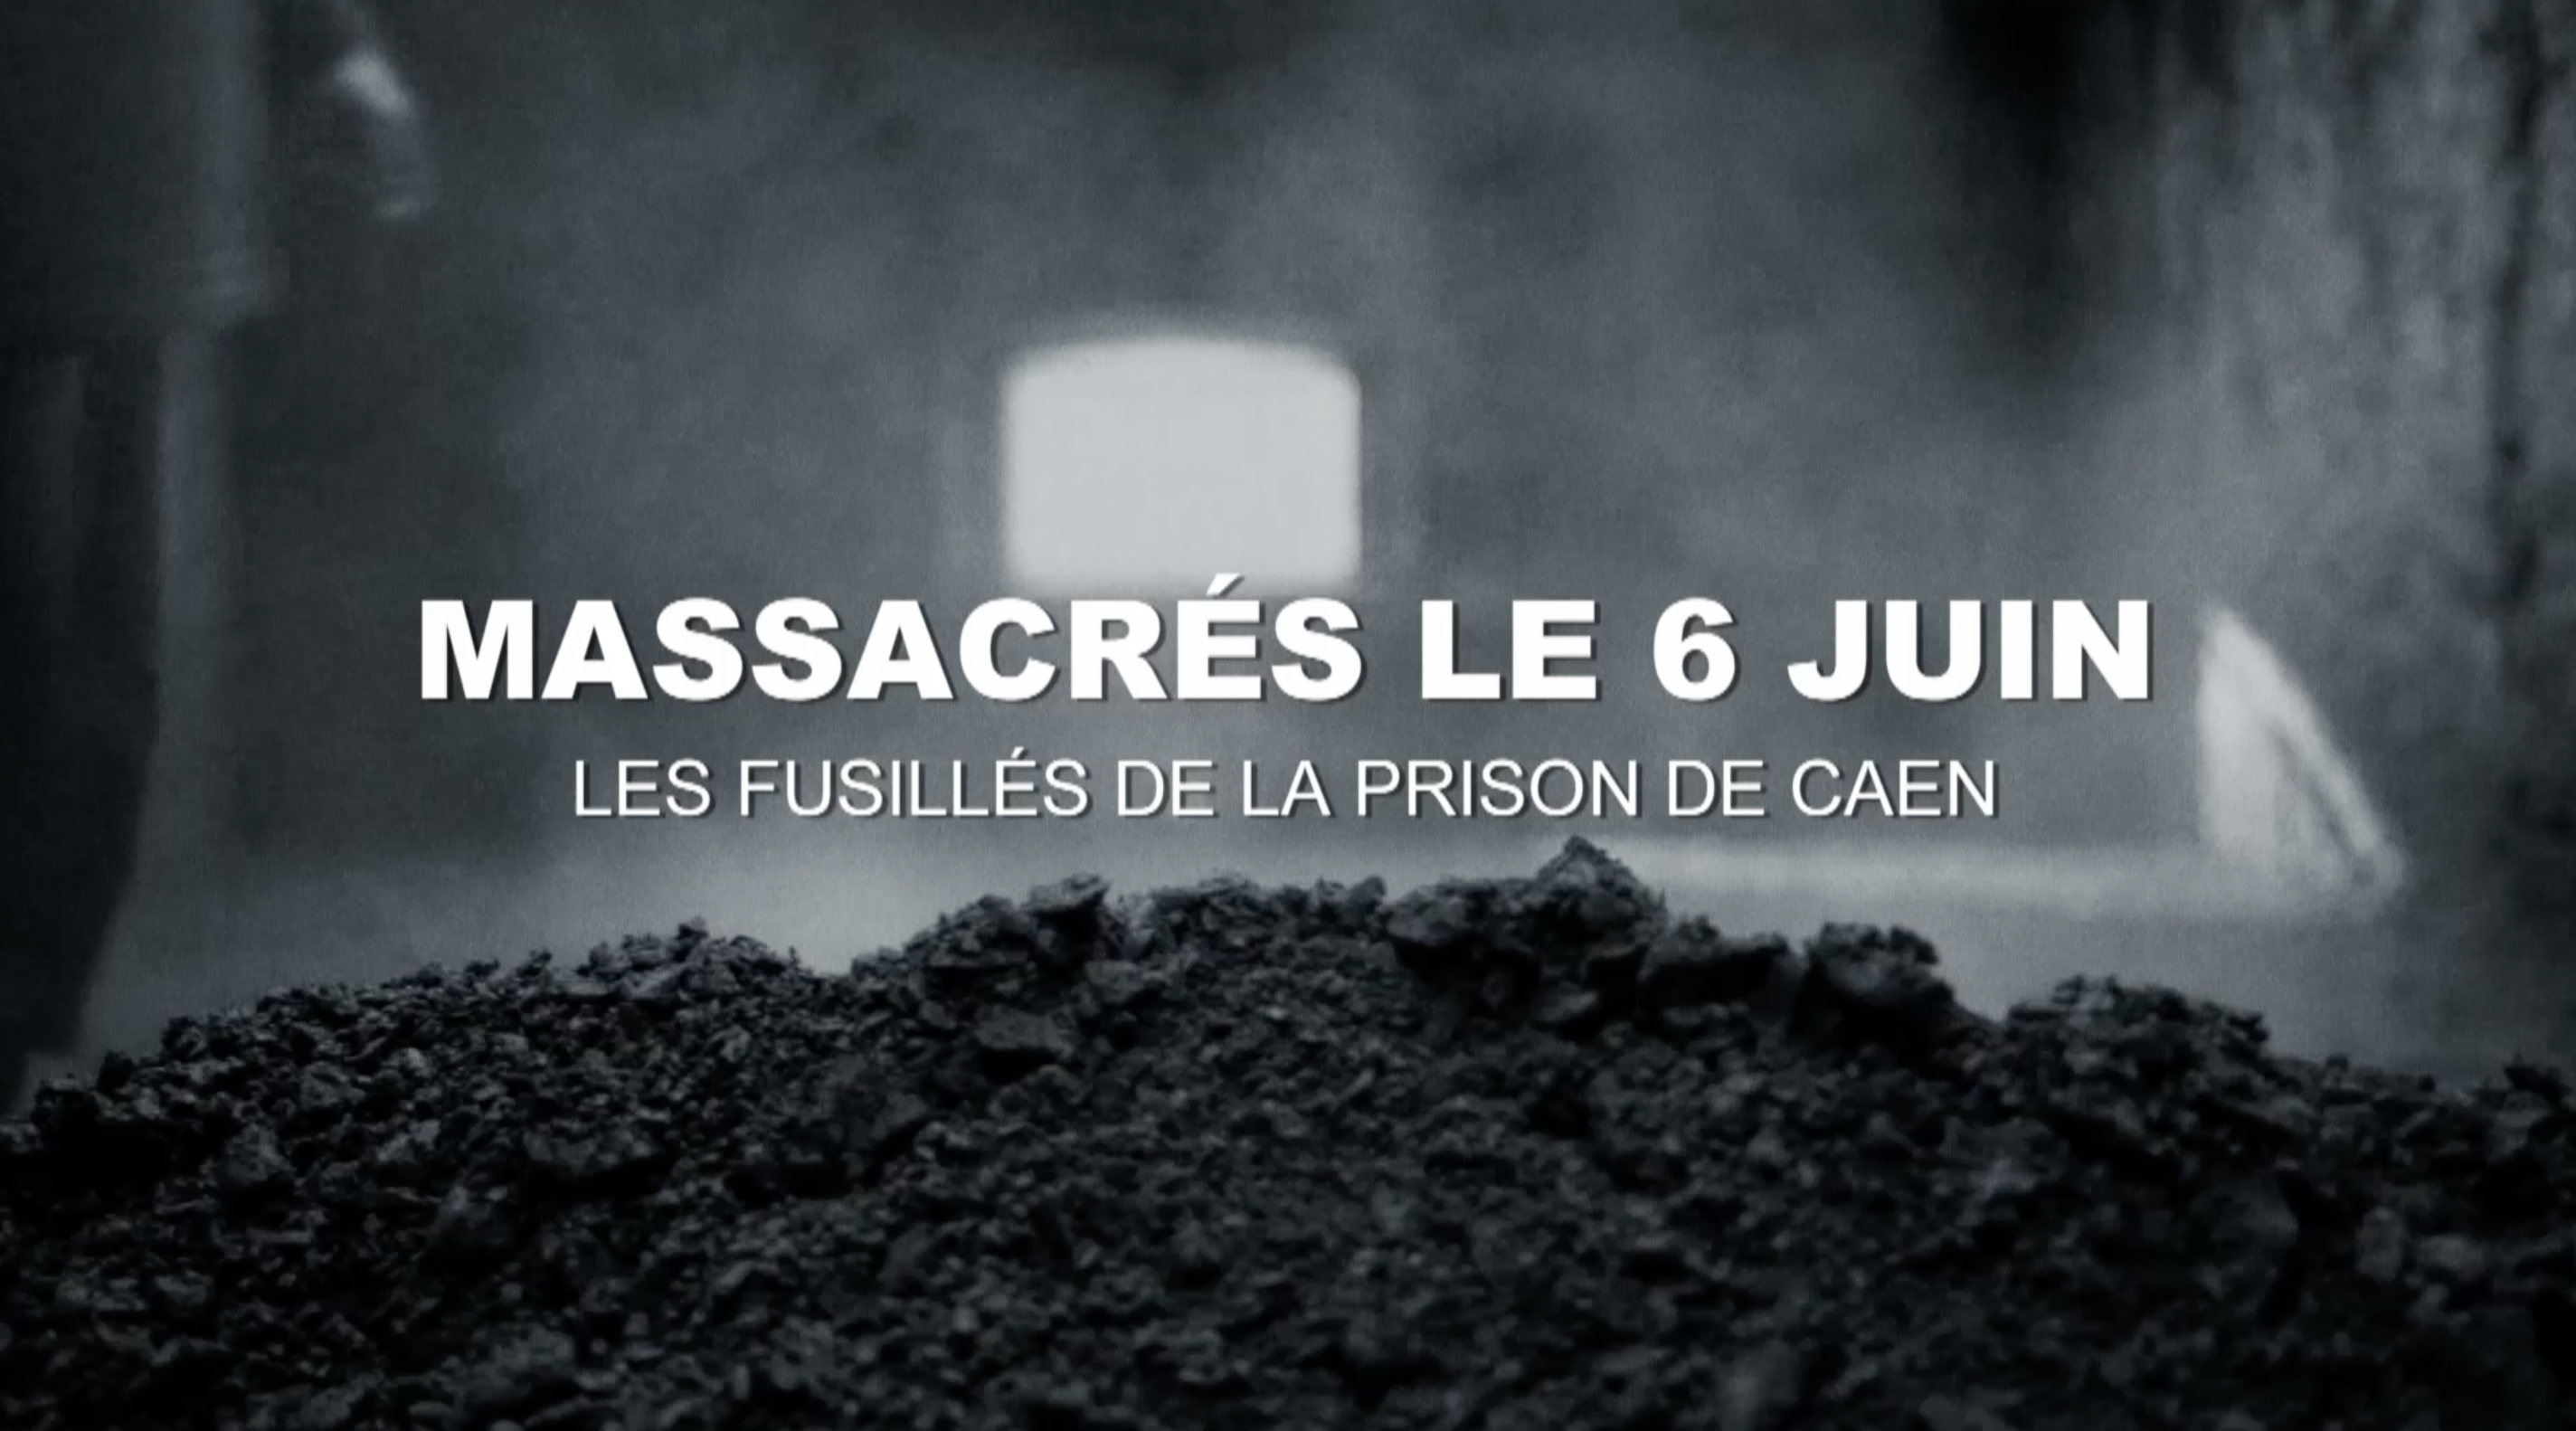 Massacrés le 6 juin, les fusillés de la prison de Caen